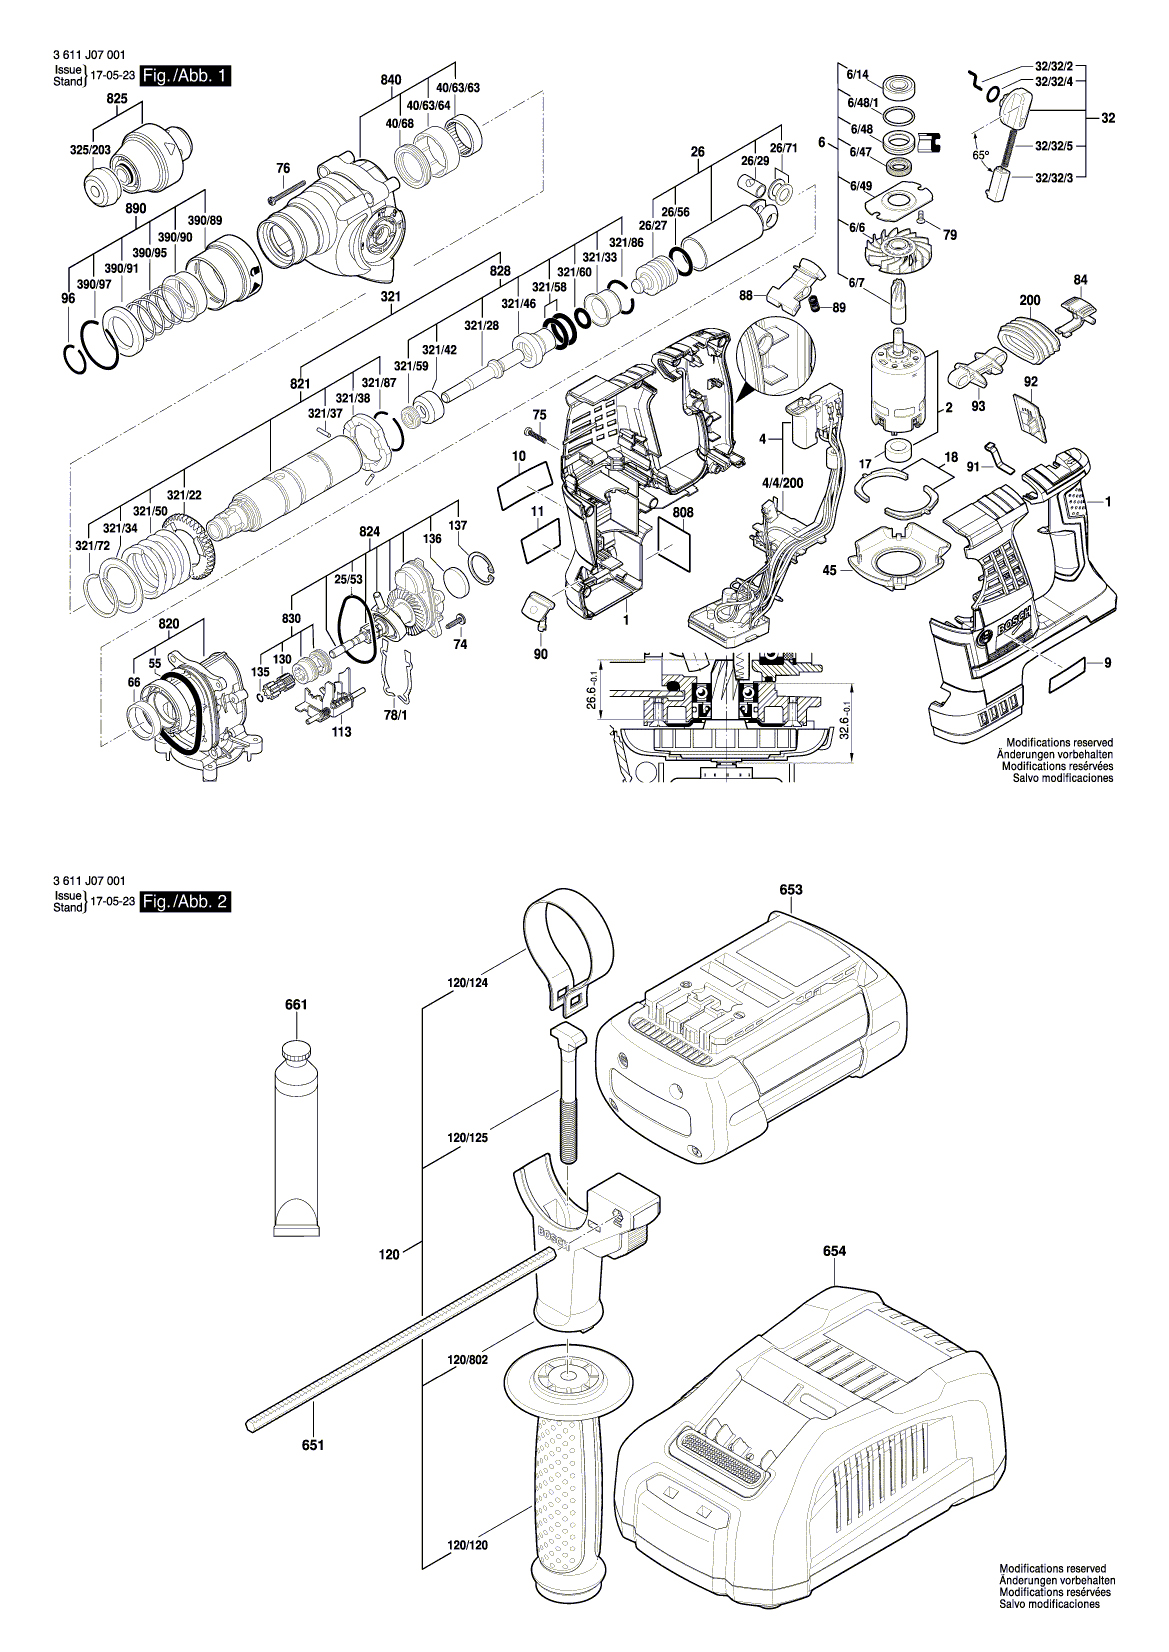 Схема на Перфоратор Bosch GBH 36 VF-LI Plus (3611 J07 001)